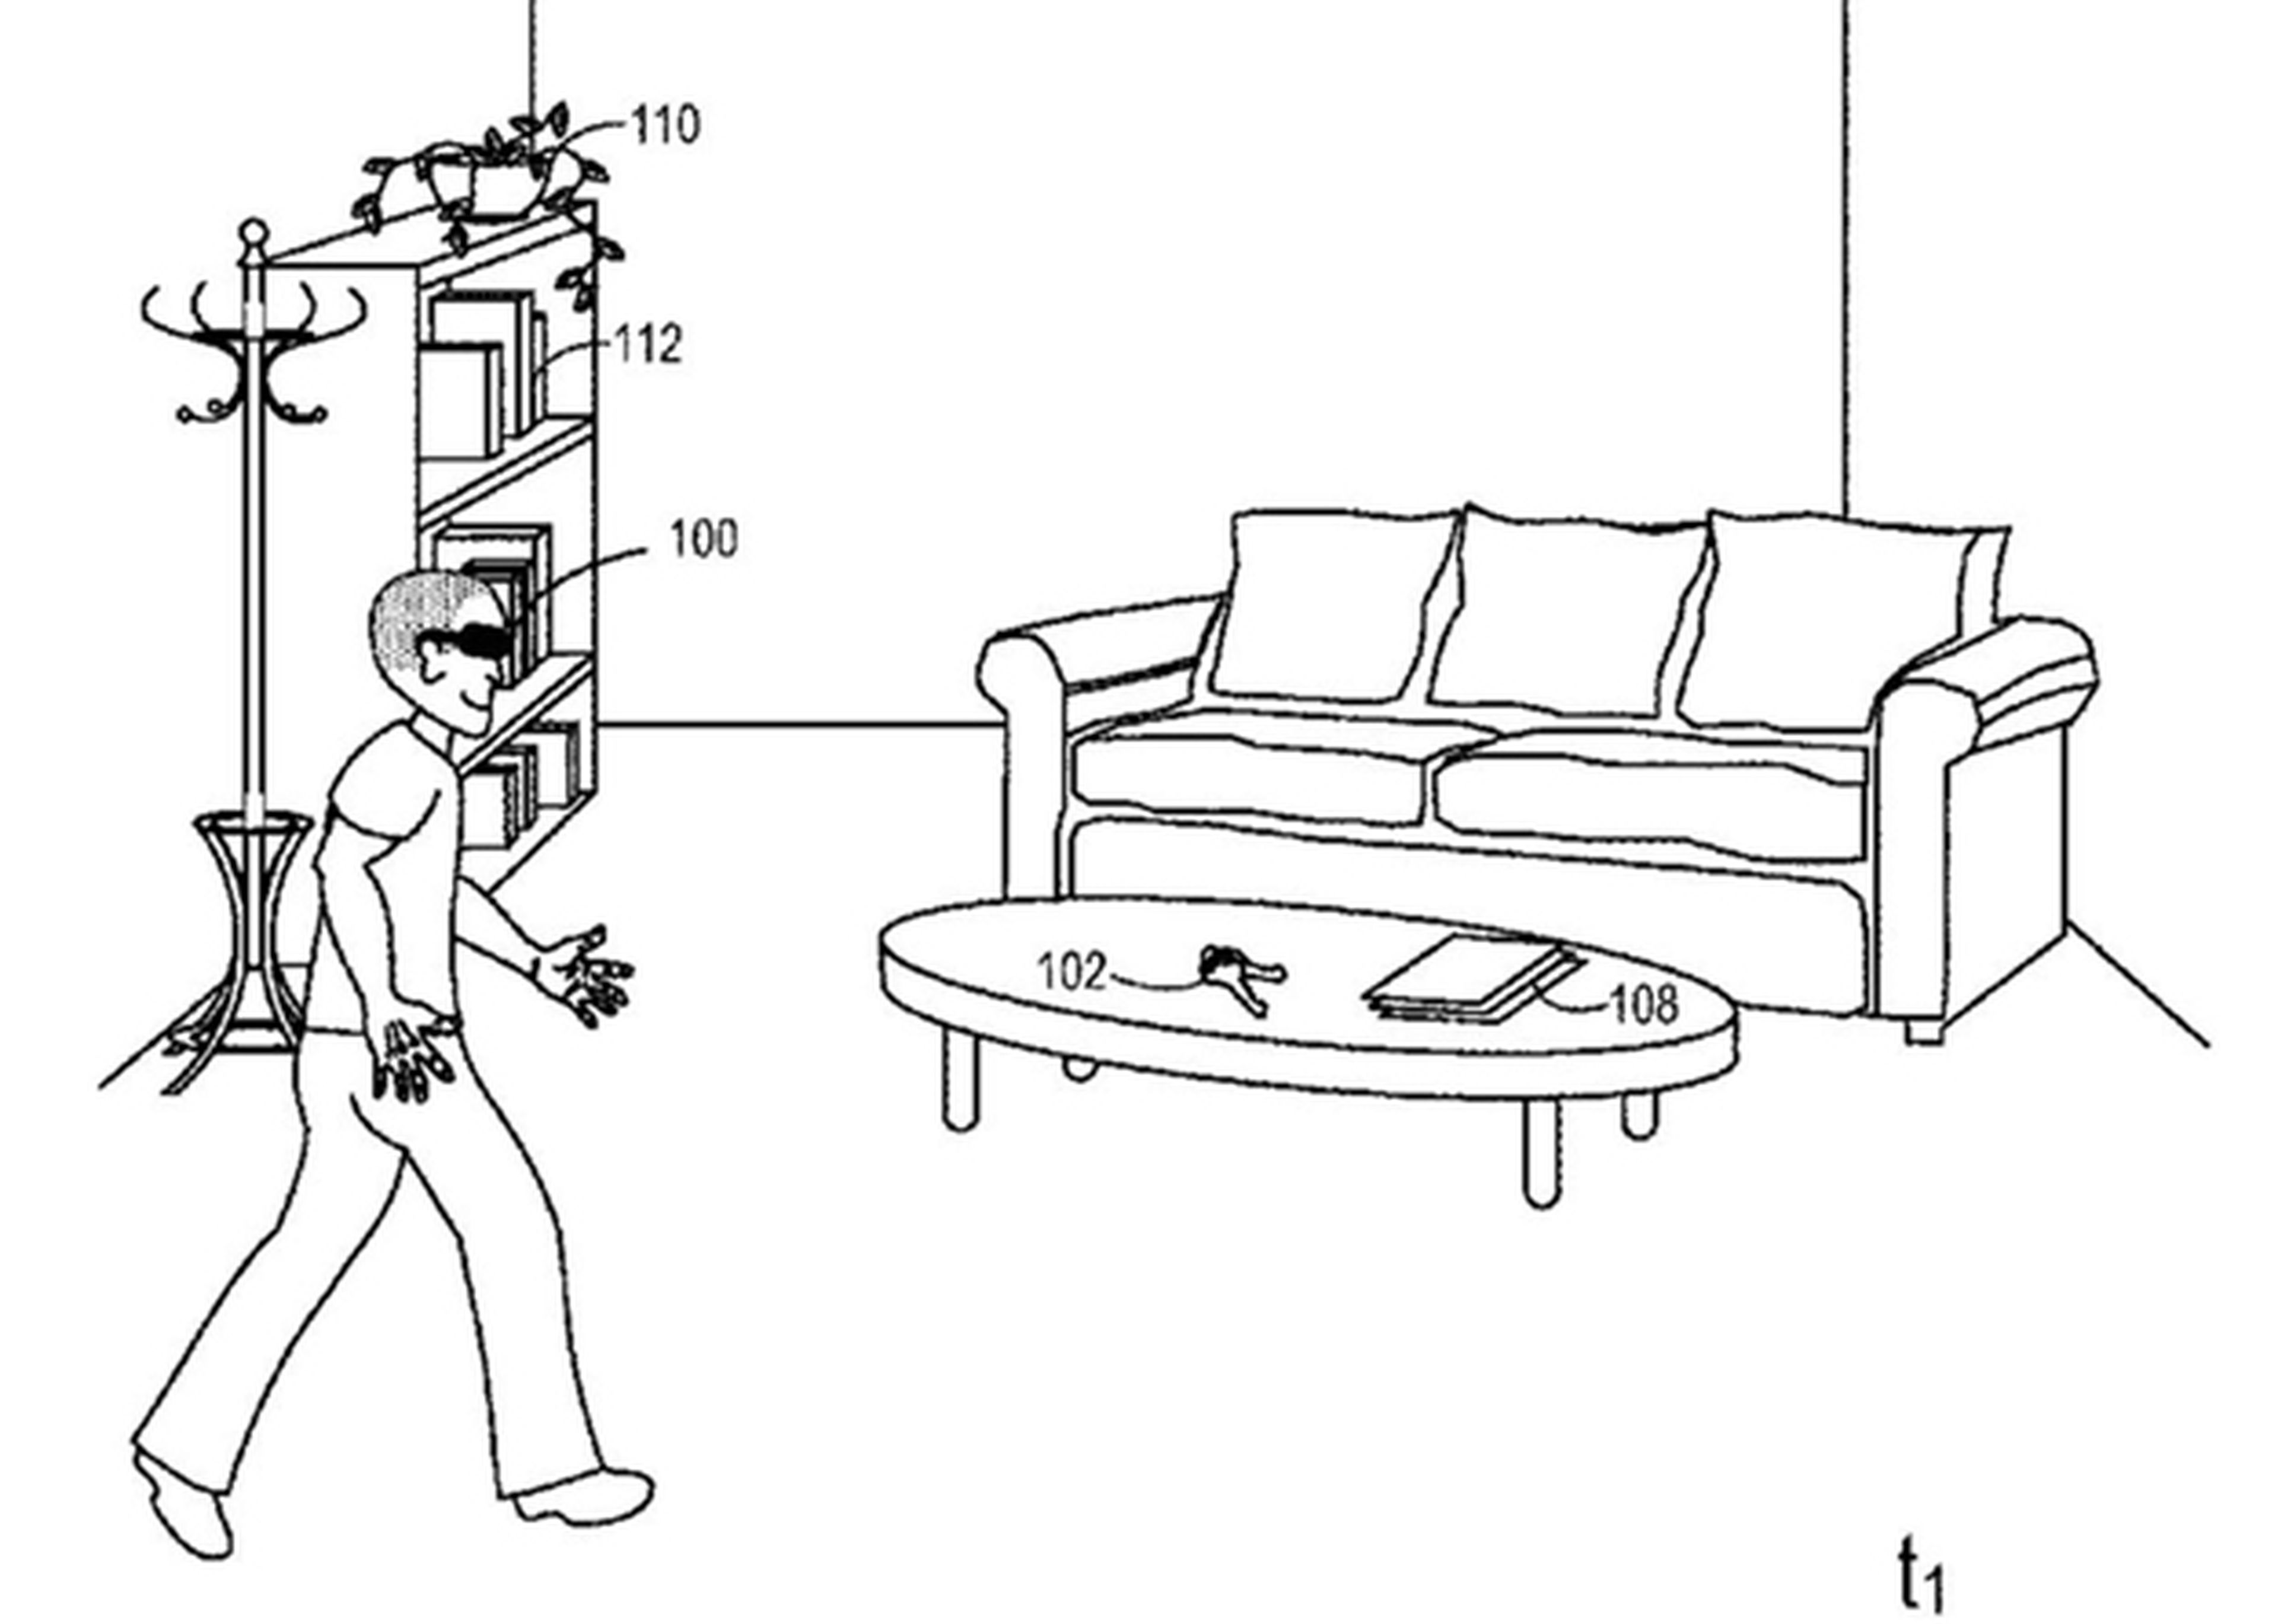 La patente de realidad aumentada de Microsoft